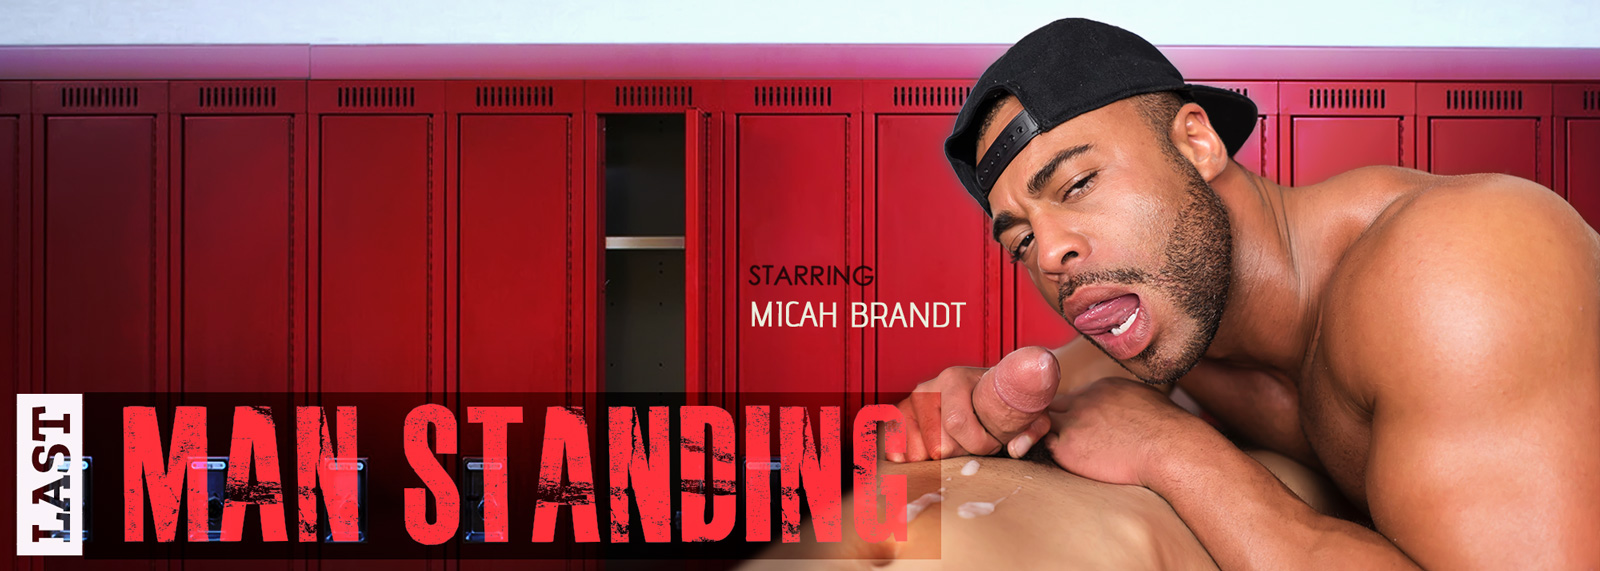 Last Man Standing - Gay VR Porn Video, Starring: Micah Brandt